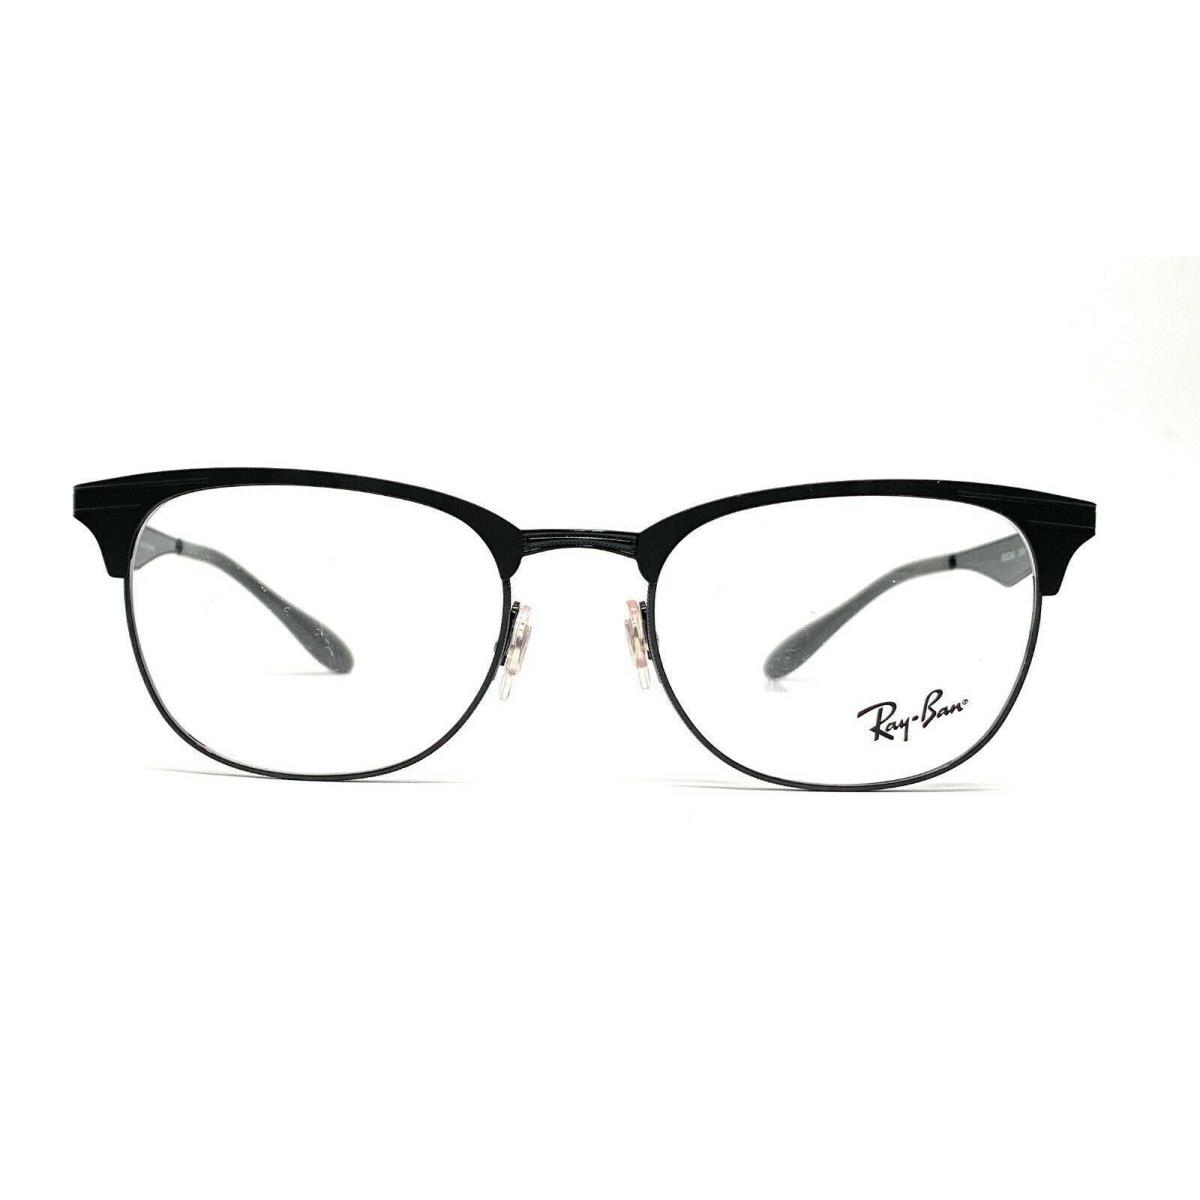 Ray Ban RX6346 2904 Black Demo Lens Unisex Eyeglasses 52 mm